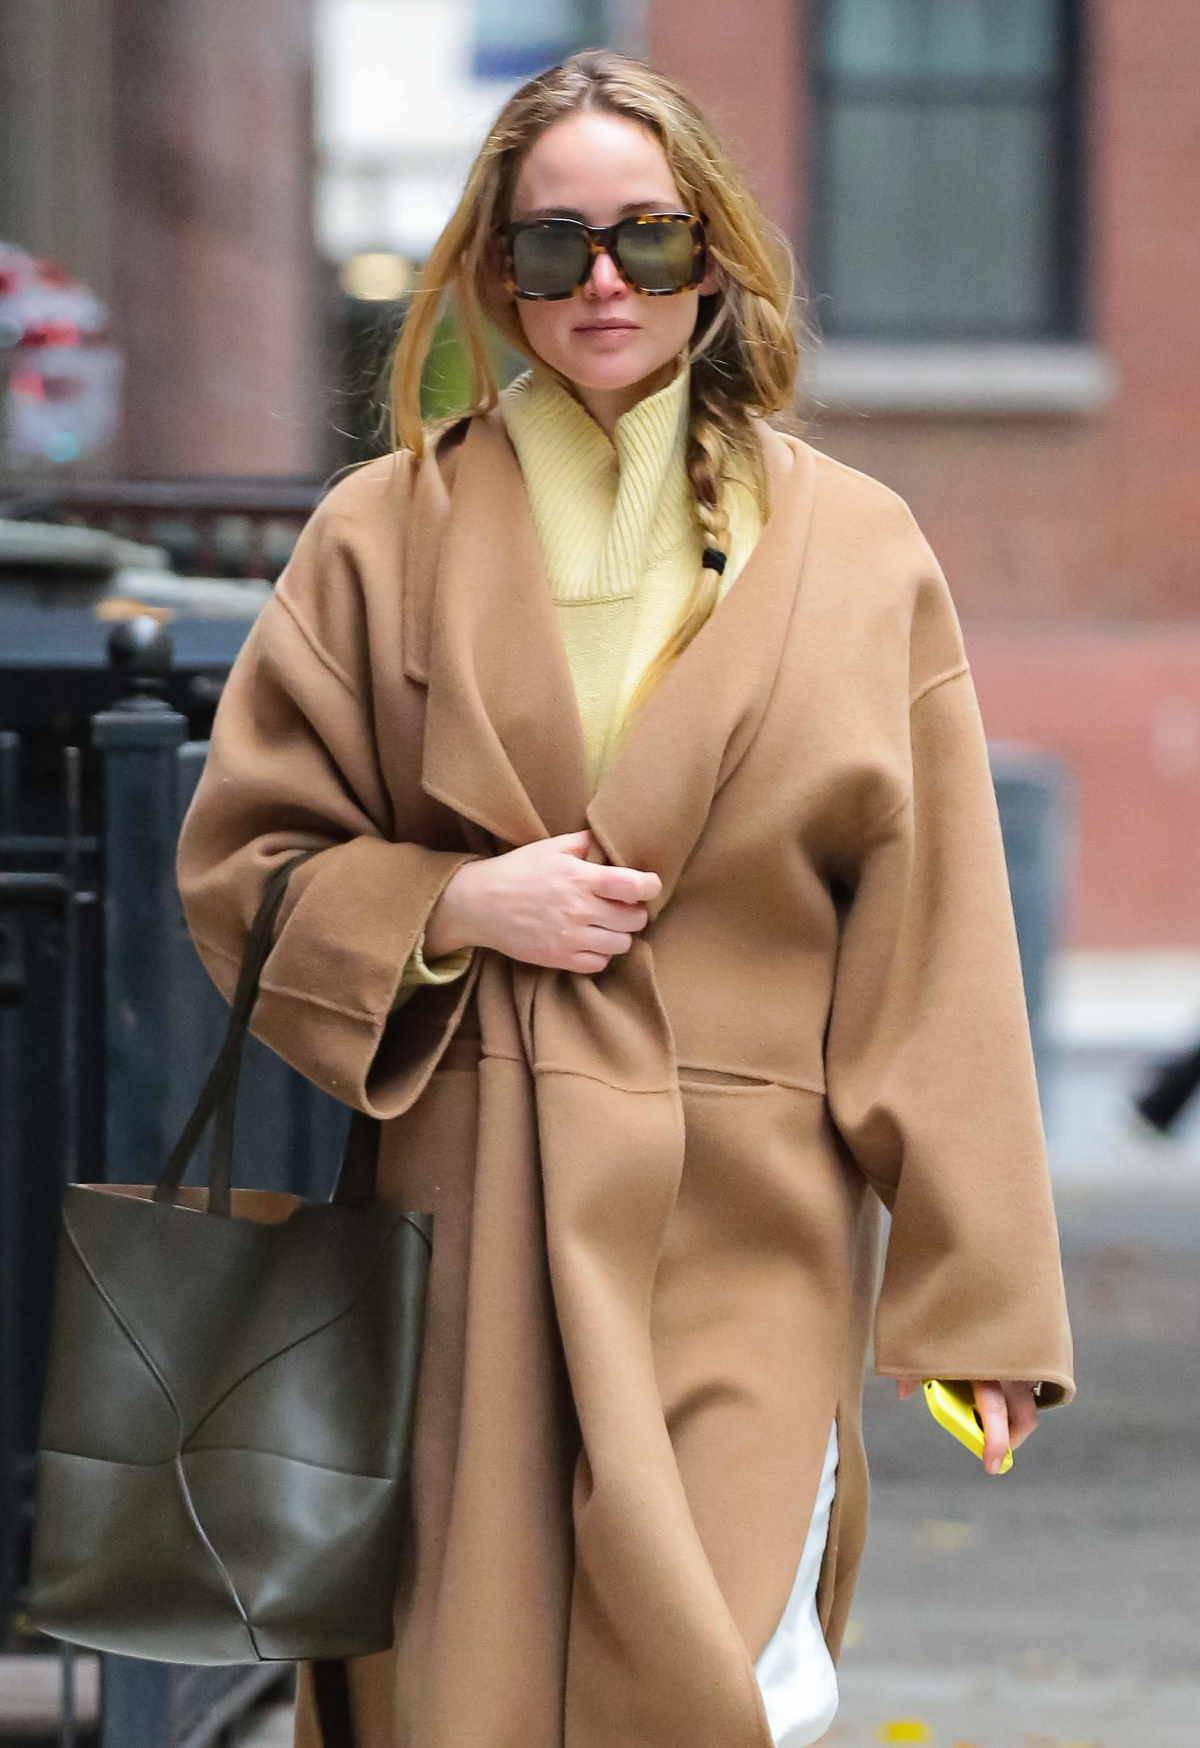 Jennifer Lawrence łączy sportowe buty i camelowy płaszcz. Aktorka Jennifer Lawrence zaprezentowała casualowy look, w którym na pierwszy plan wybijają się buty adidas model Gazelle i camelowy płaszcz.